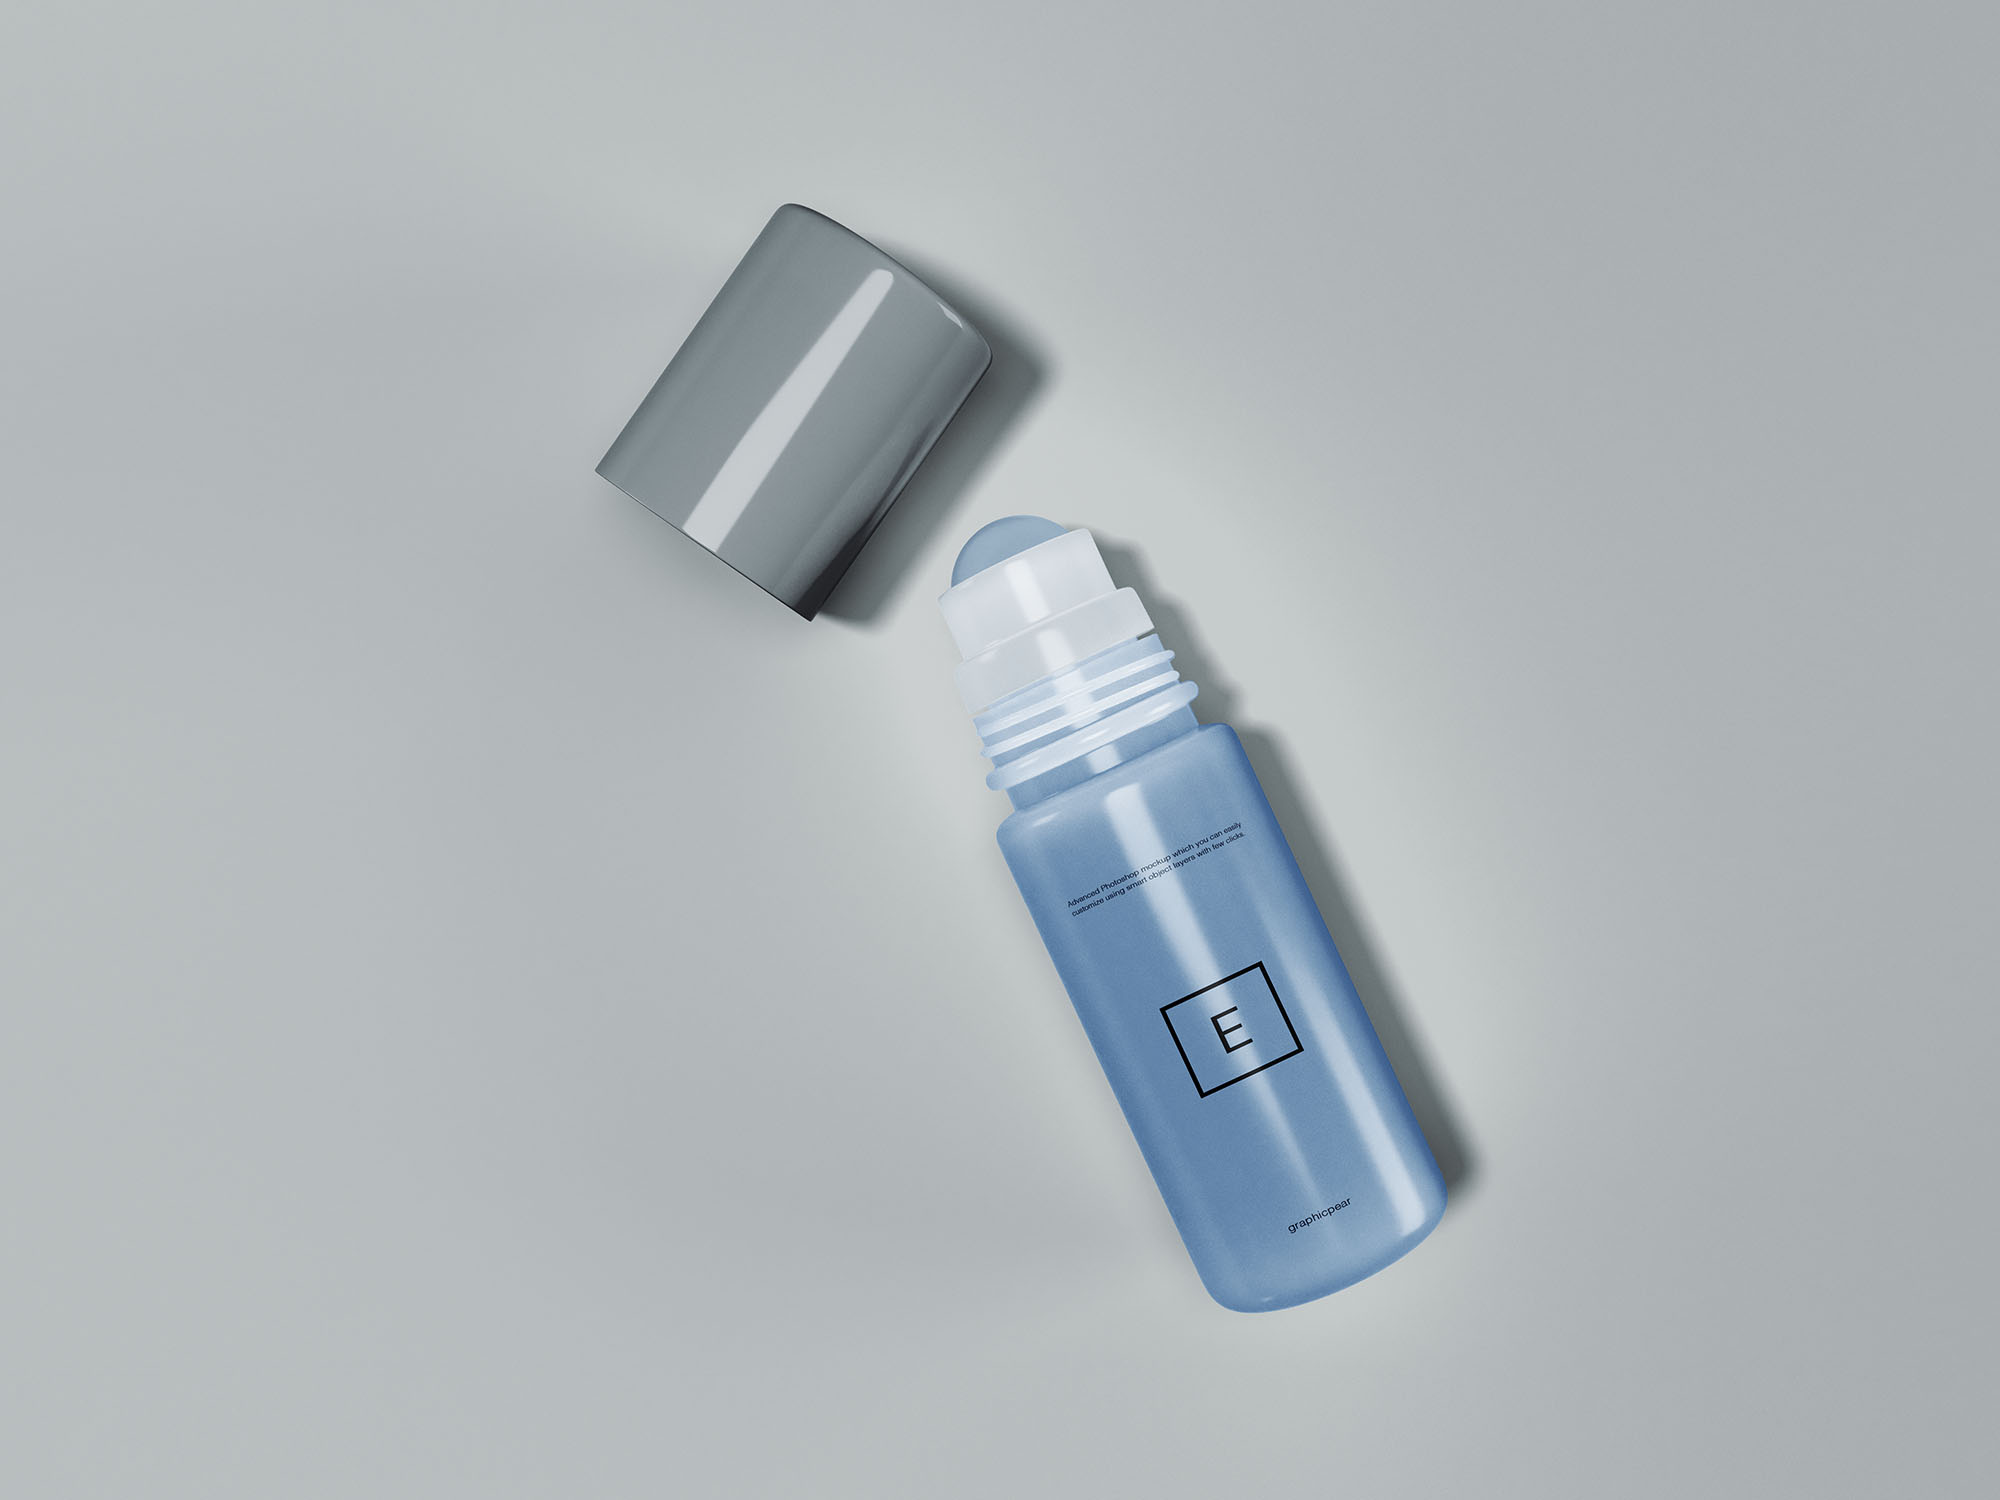 滚珠香水瓶外观设计效果图第一素材精选 Rollerball Perfume Mockup插图